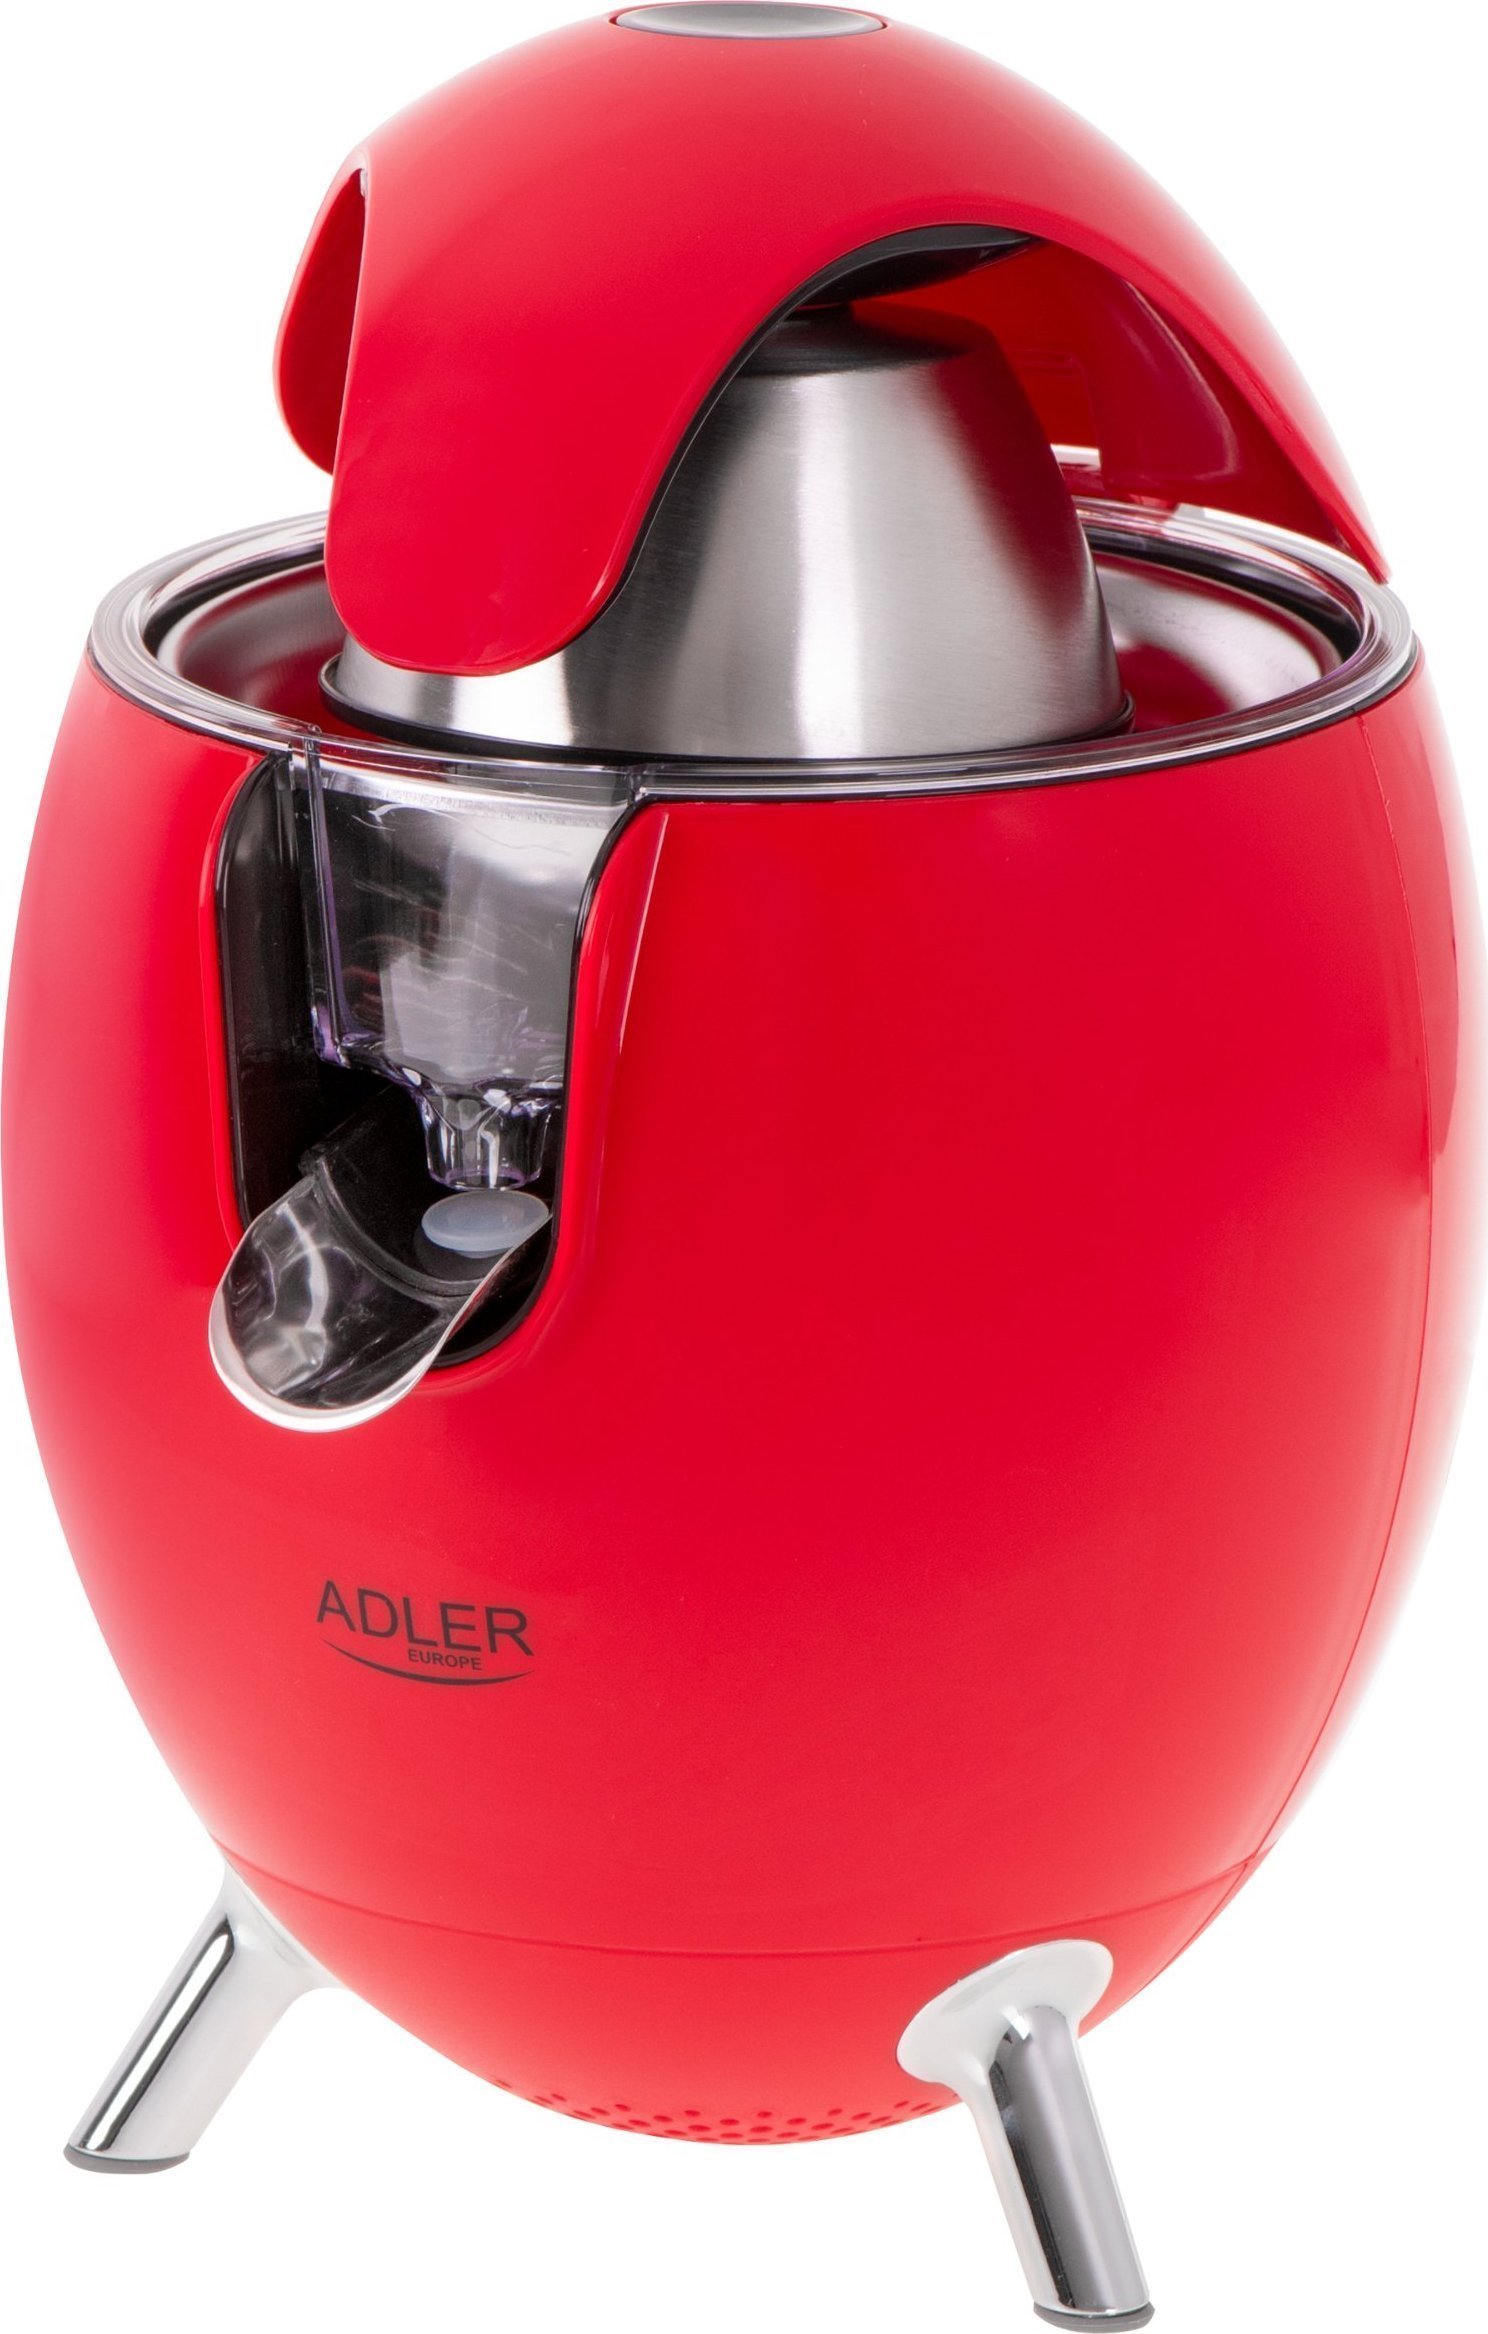 Adler Citrus Juicer AD 4013r Red, 800 W, Number of speeds 1 Sulu spiede